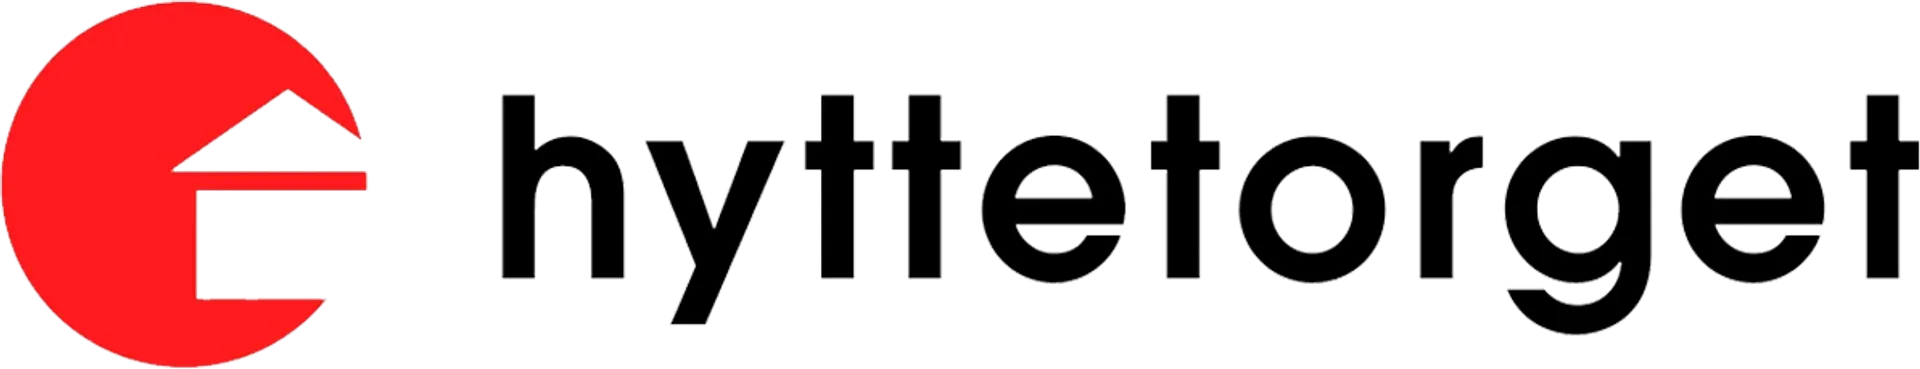 HYTTETORGET logo